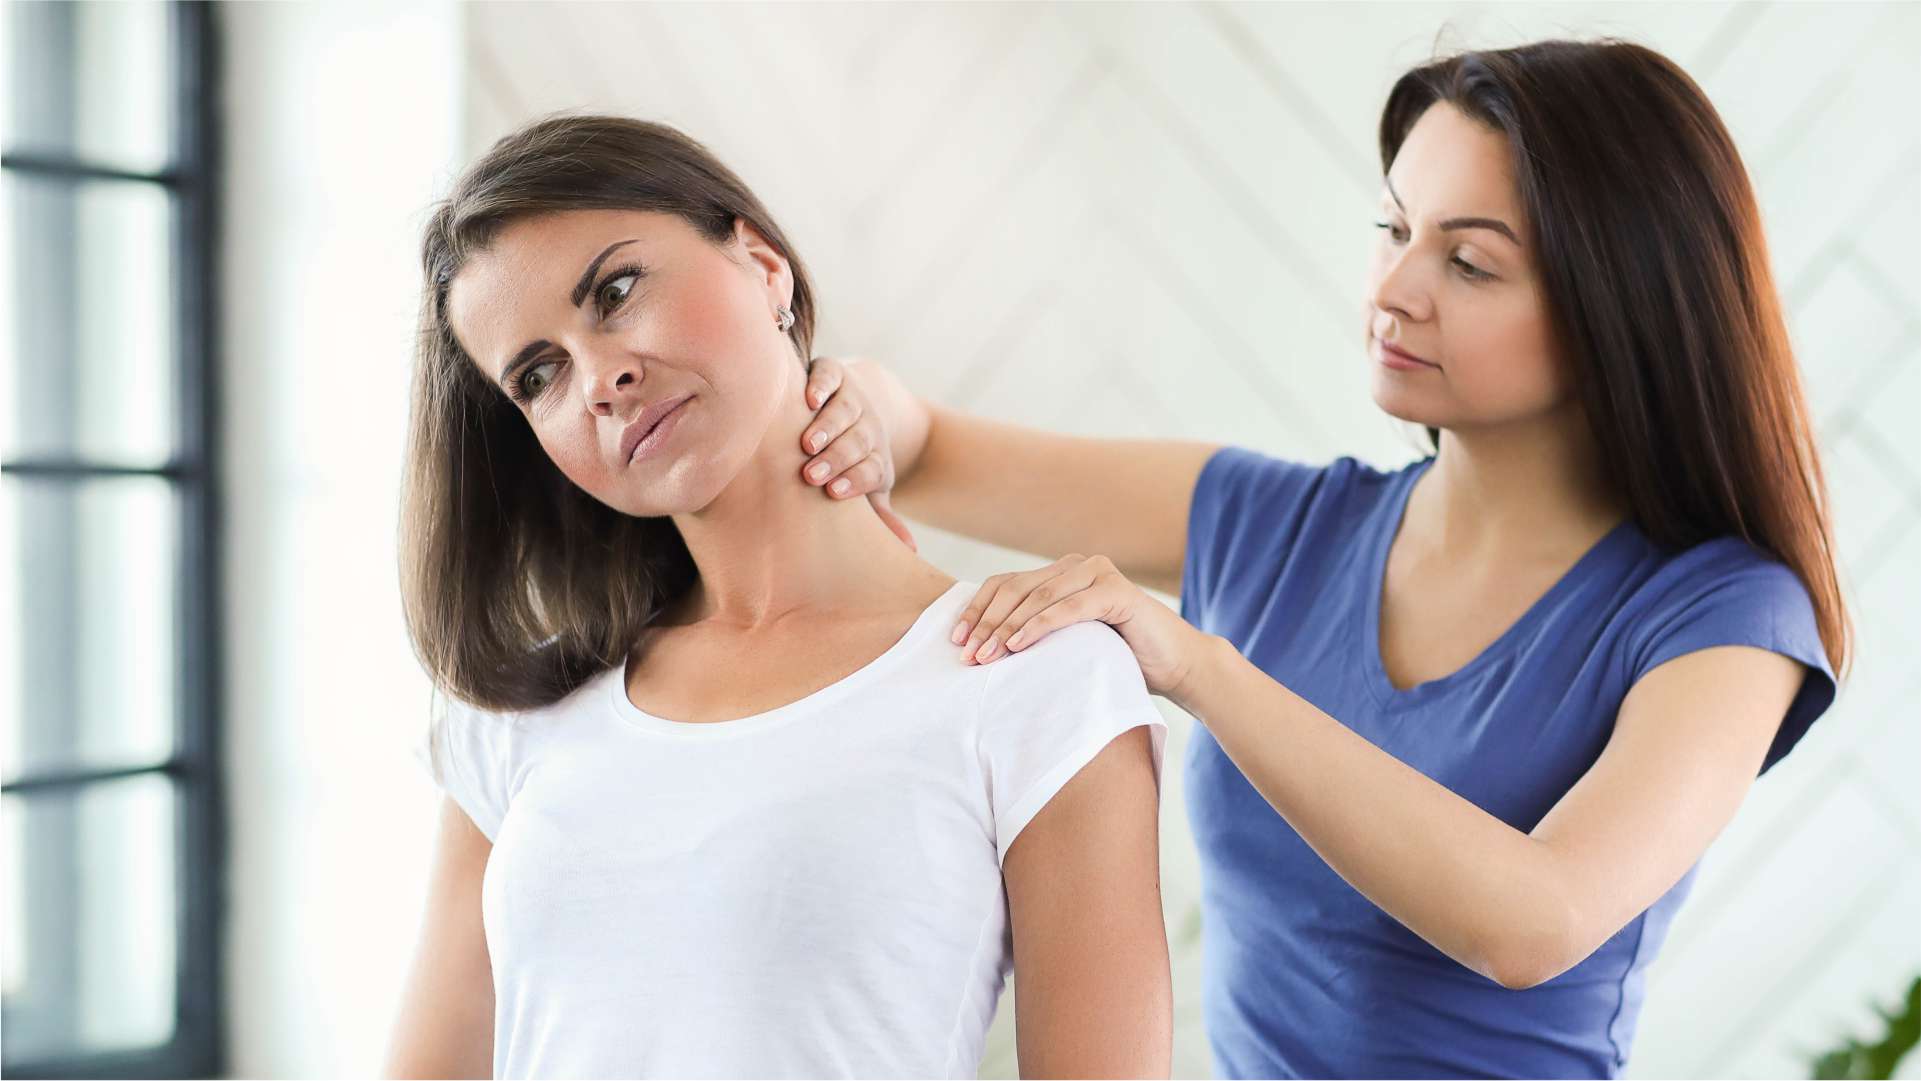 Caroço no pescoço: o que pode ser e como diagnosticar